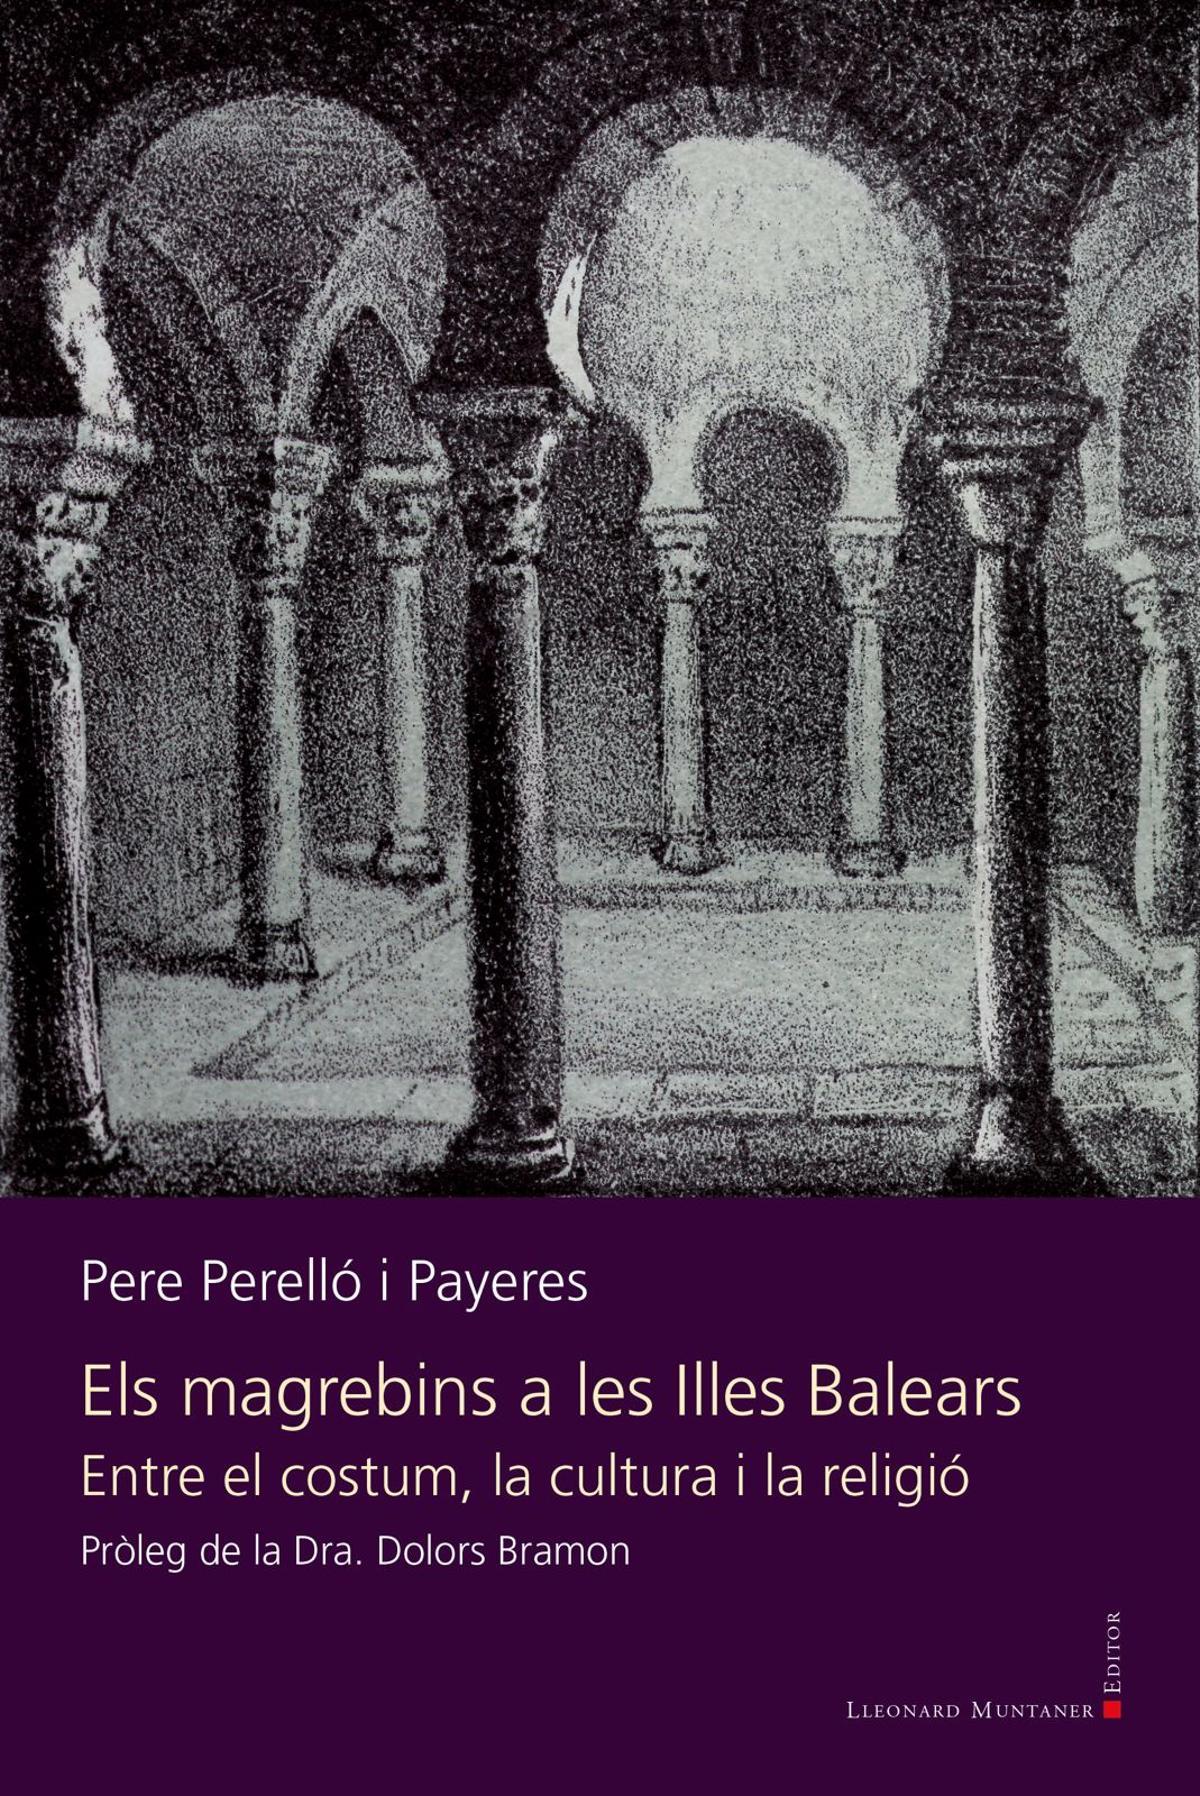 El libro que ha escrito Pere Perelló